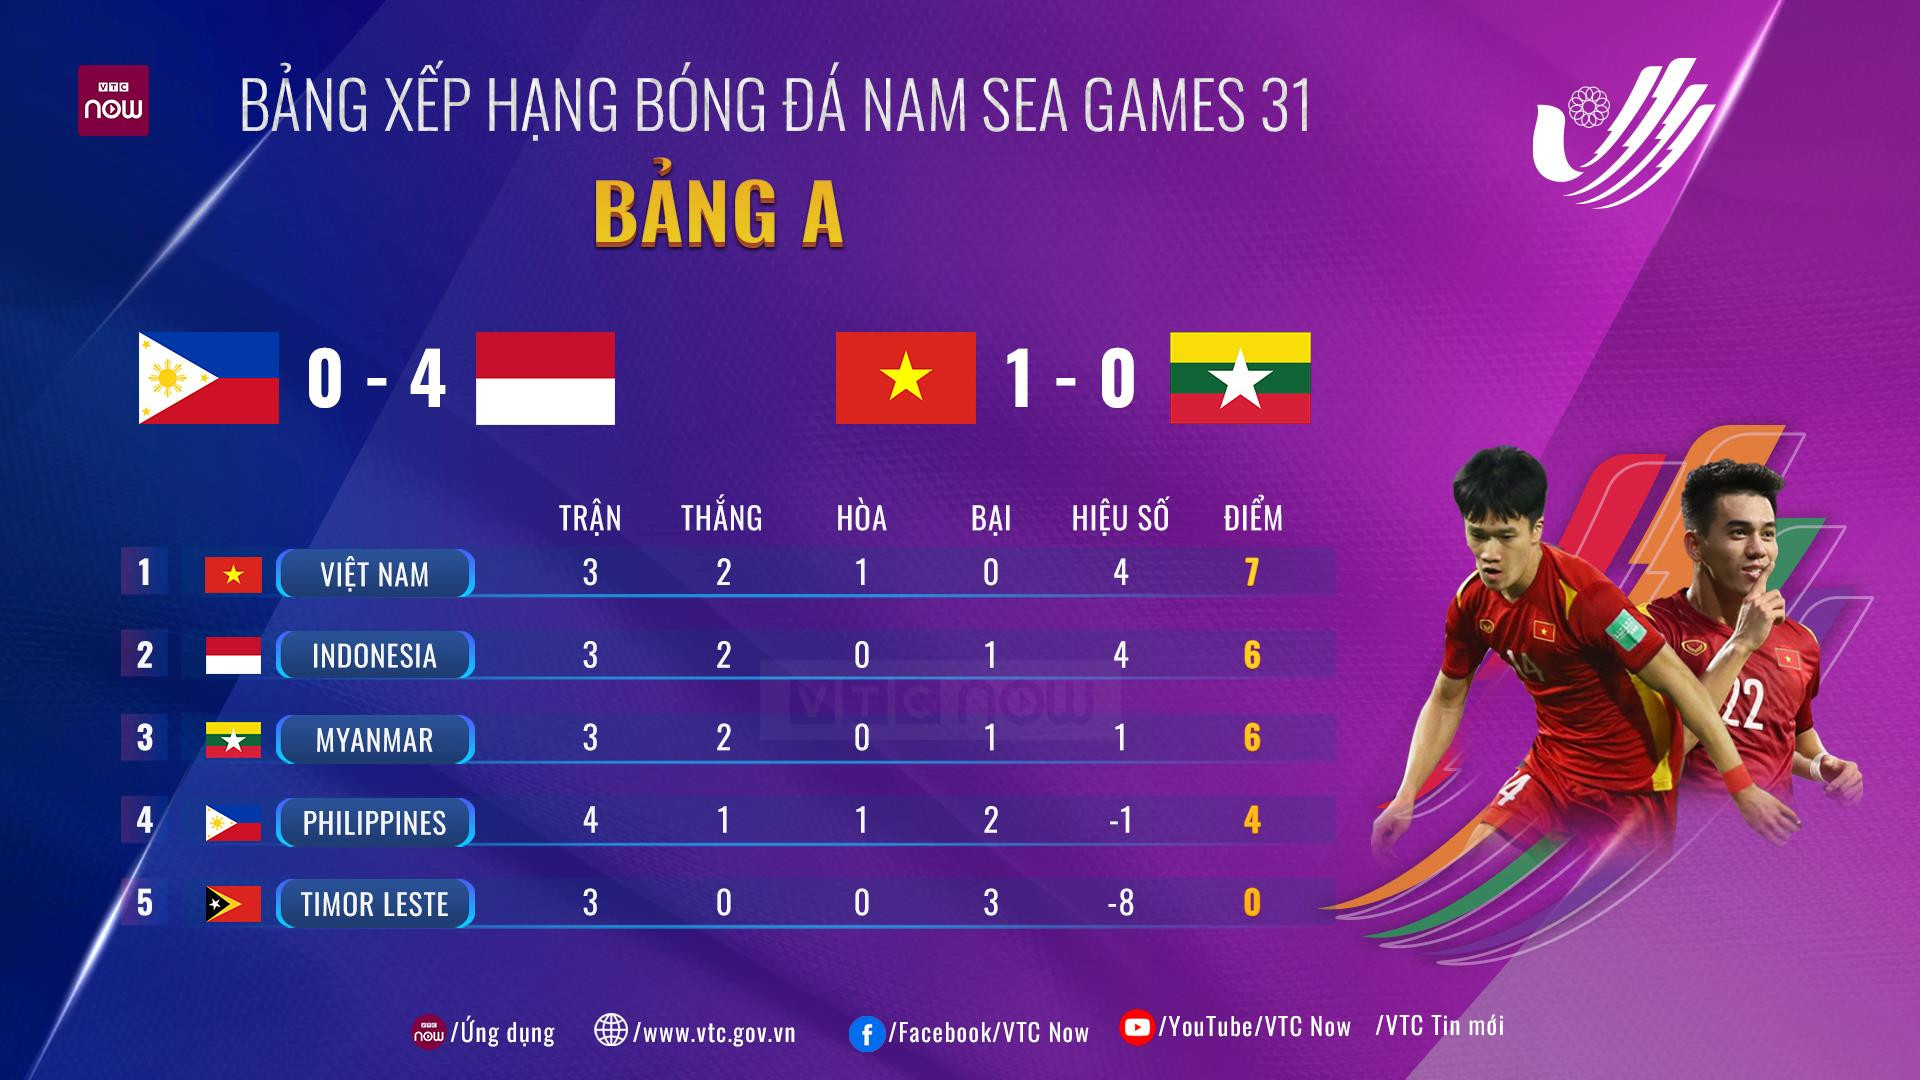 Cập nhật Bảng xếp hạng Bảng A bóng đá nam SEA Games 31: U23 Việt Nam dẫn đầu - 1